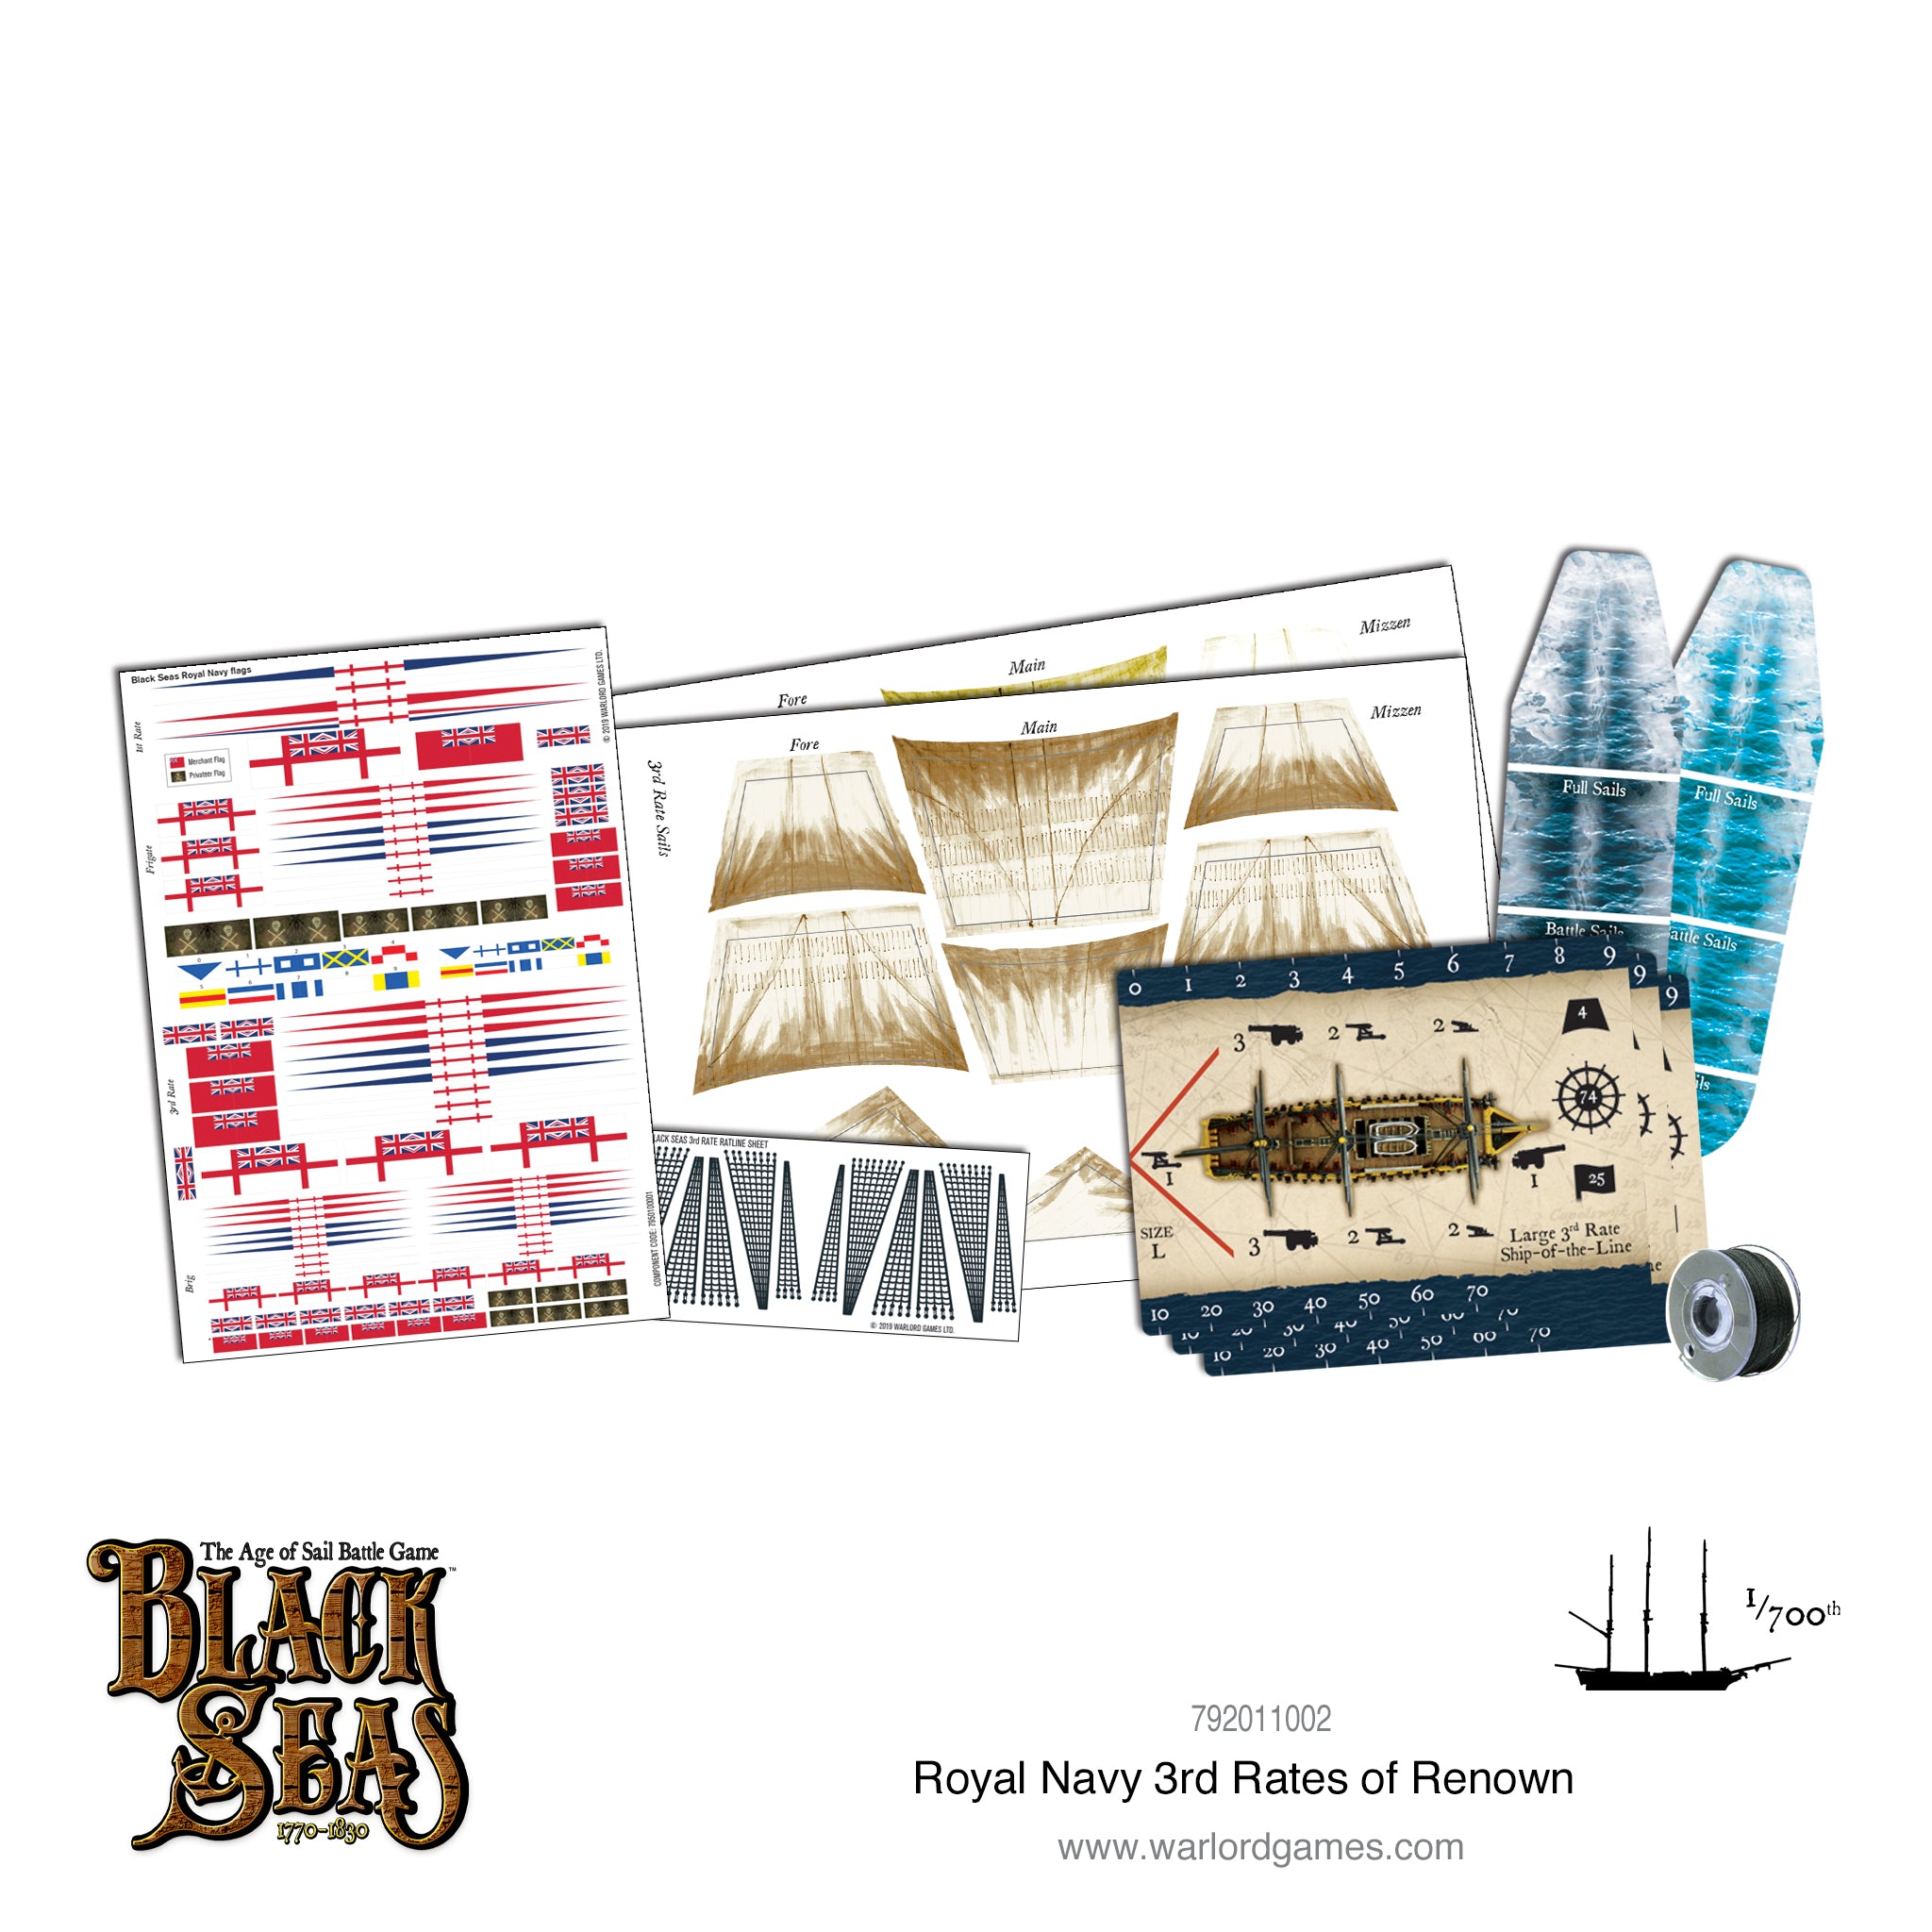 Royal Navy 3rd Rates of Renown